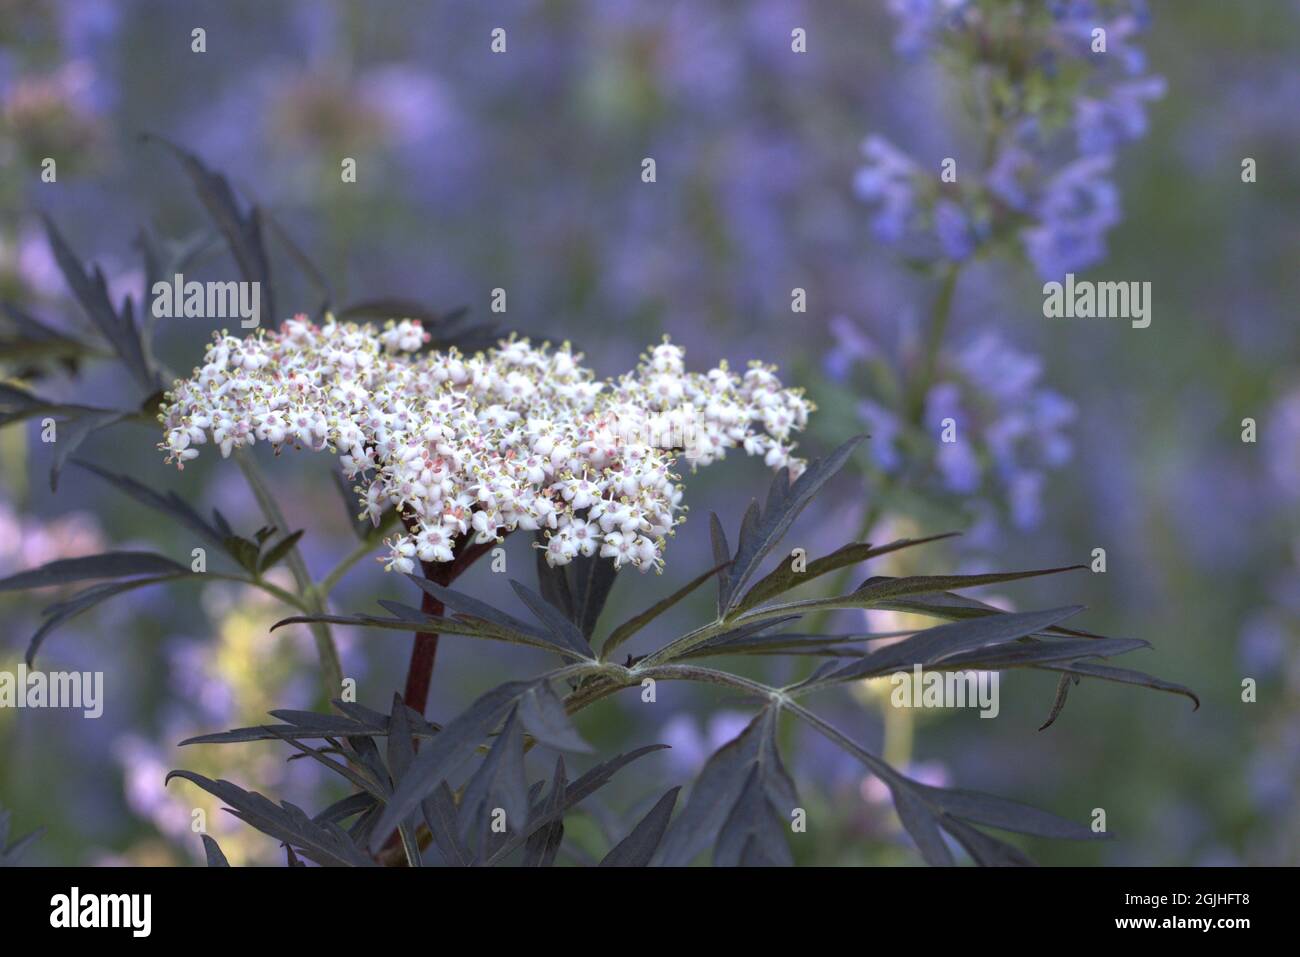 Nahaufnahme einer wunderschönen Blume von sambucus nigra vor einem grau-blauen, unscharfen Hintergrund Stockfoto